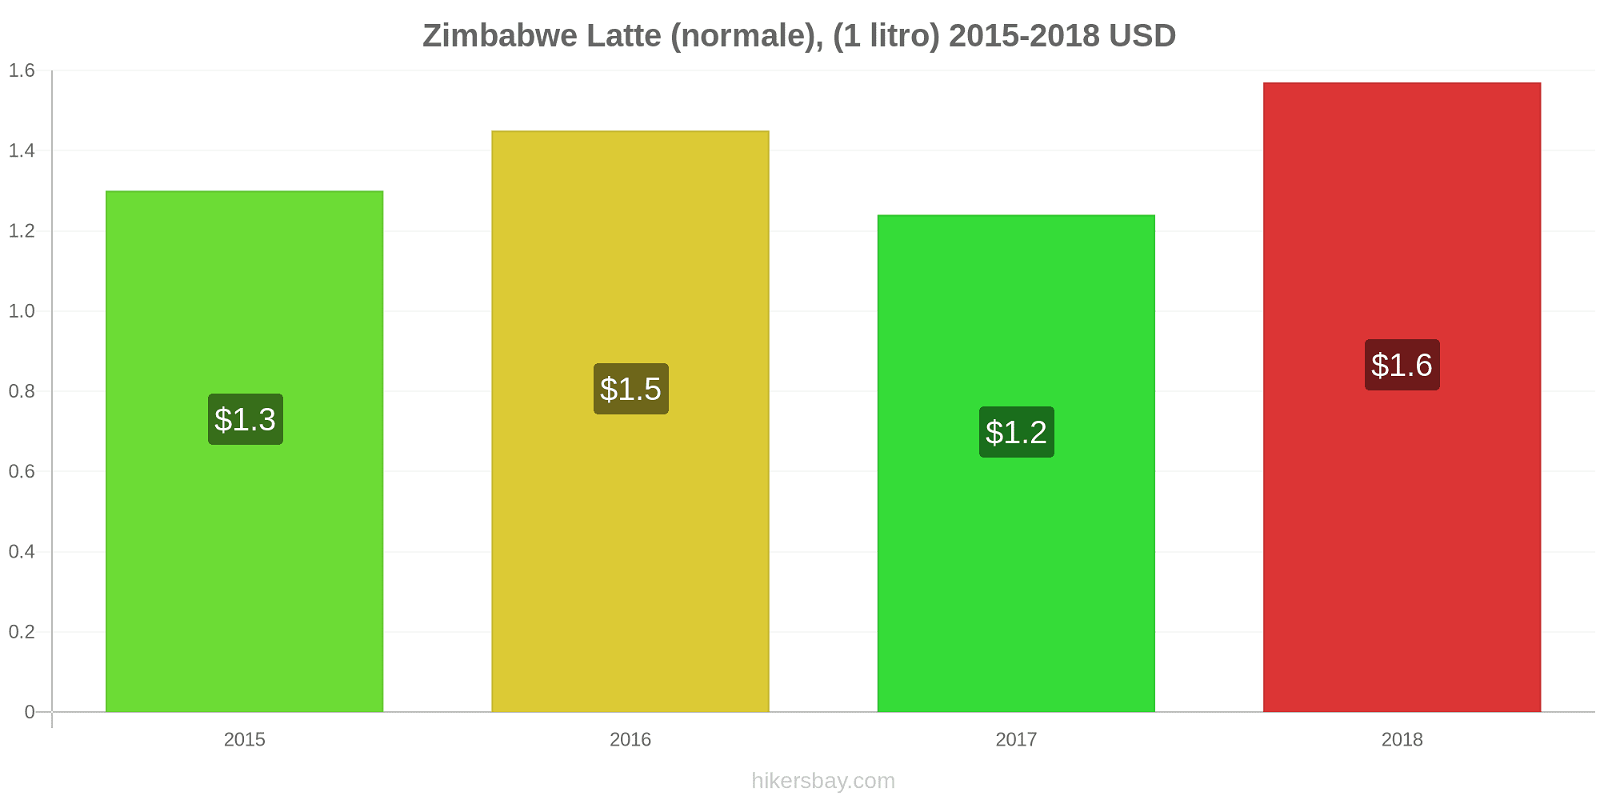 Zimbabwe variazioni di prezzo Latte (1 litro) hikersbay.com